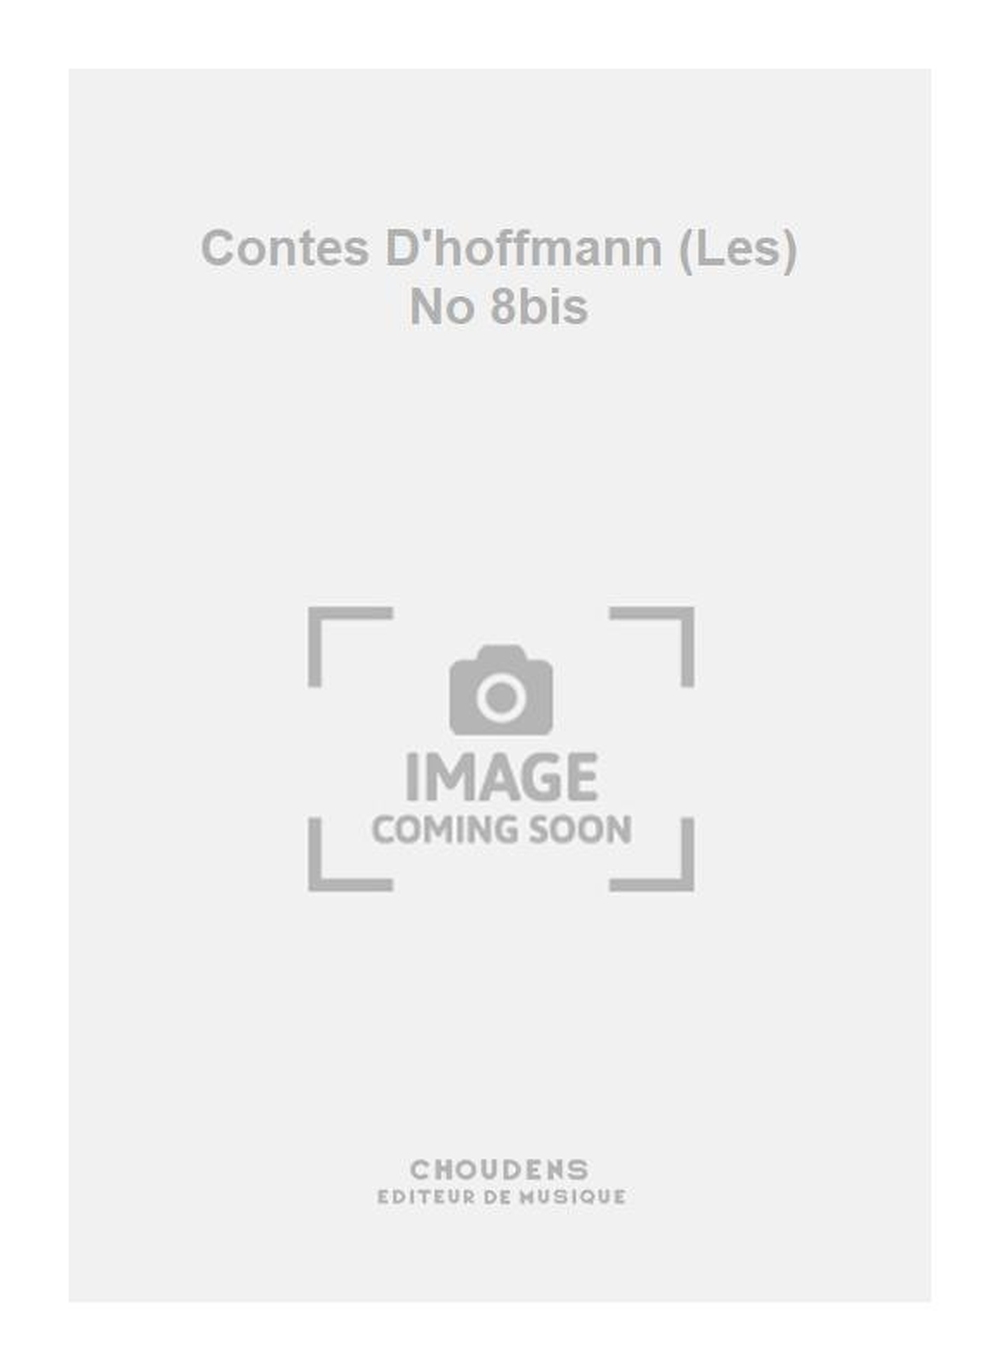 Jacques Offenbach: Contes D'hoffmann (Les) No 8bis